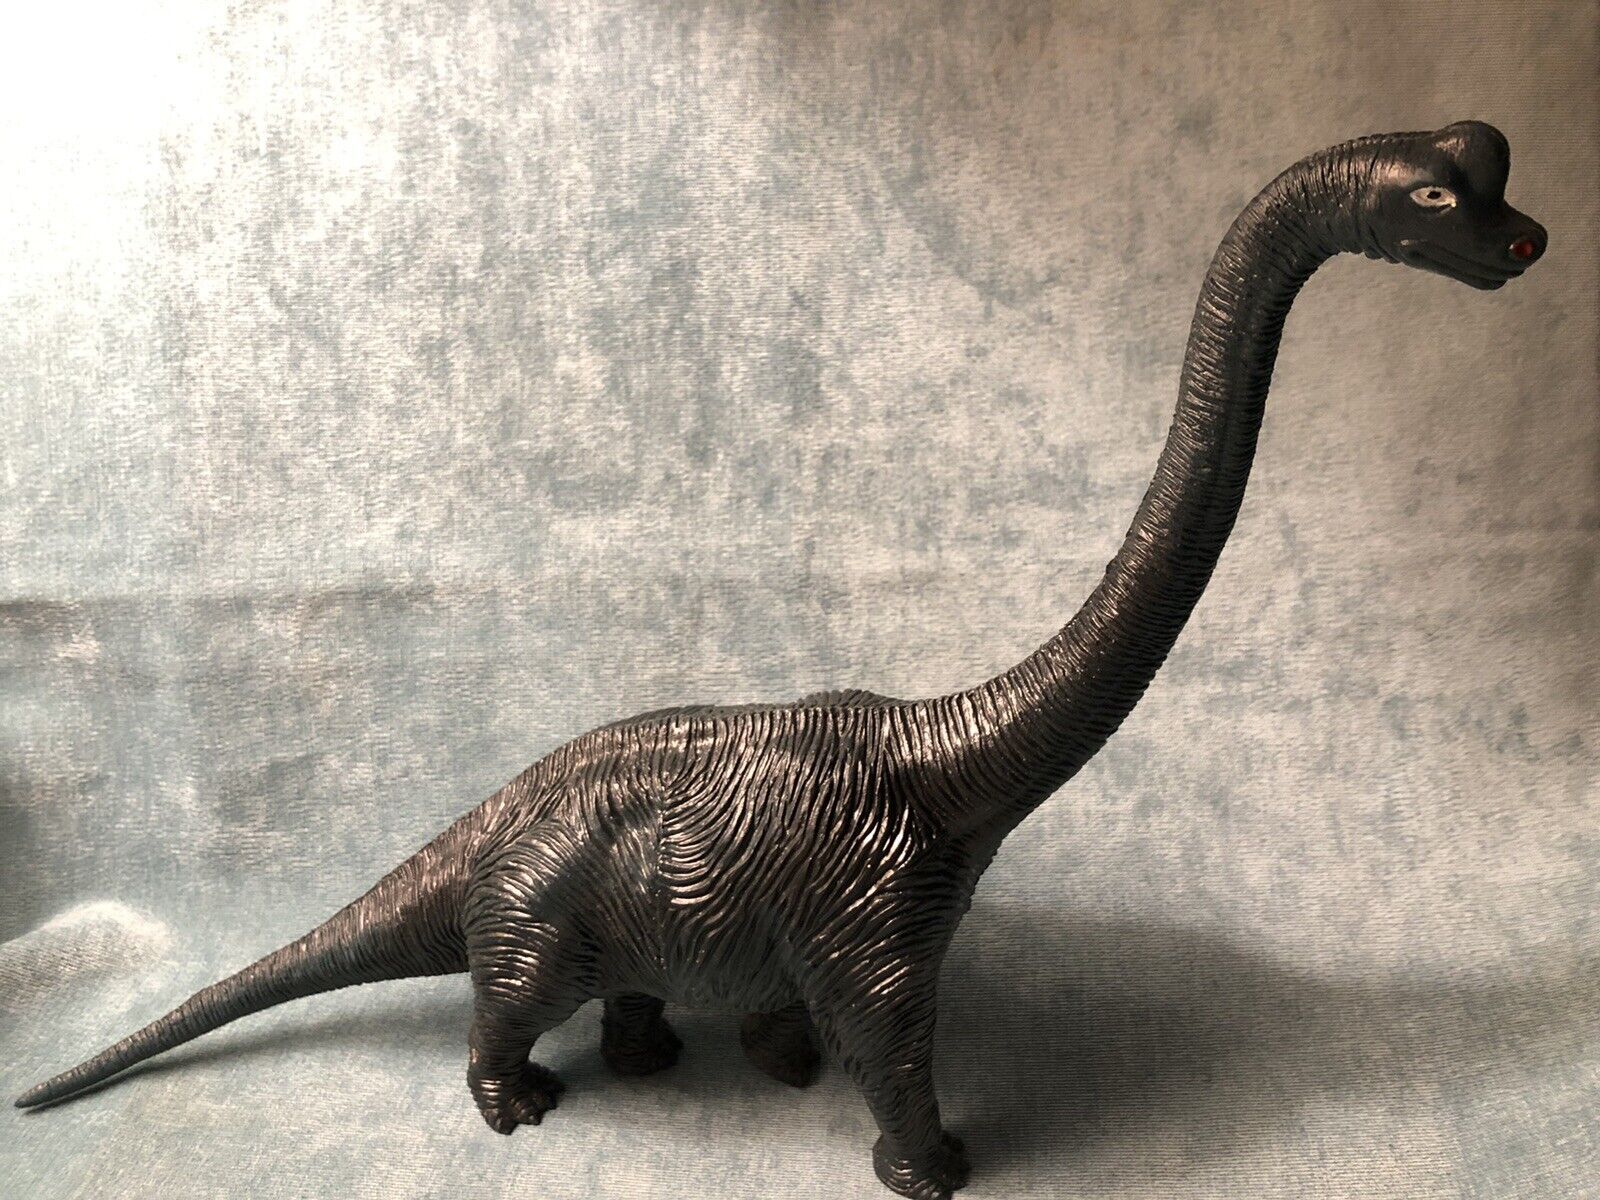 Vintage Larami Brachiosaurus Dinosaur 1980's Action Figure Toy Retro Plastic EUC